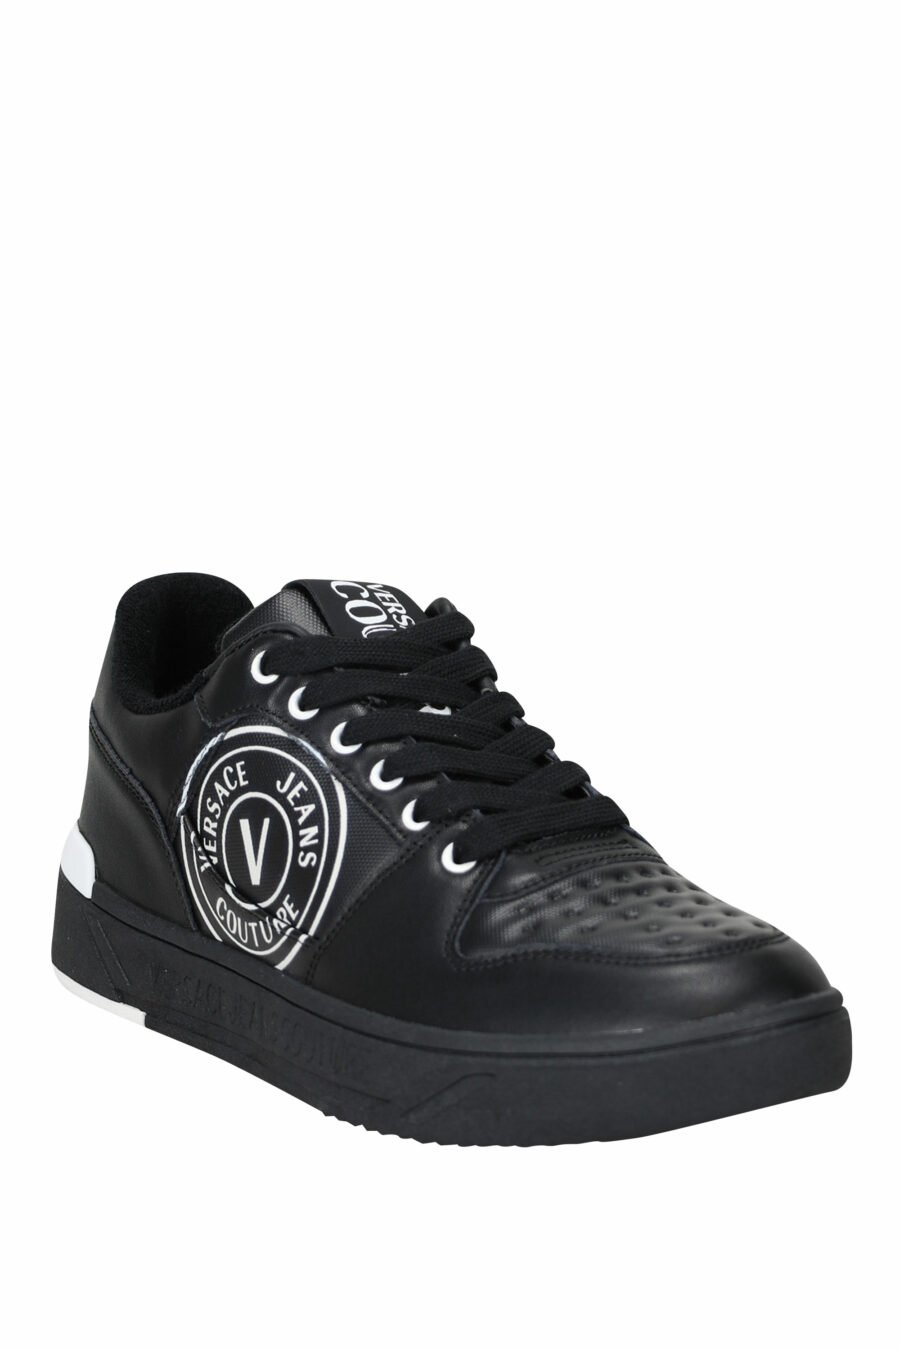 Zapatillas negras con blanco y logo circular - 8052019455366 1